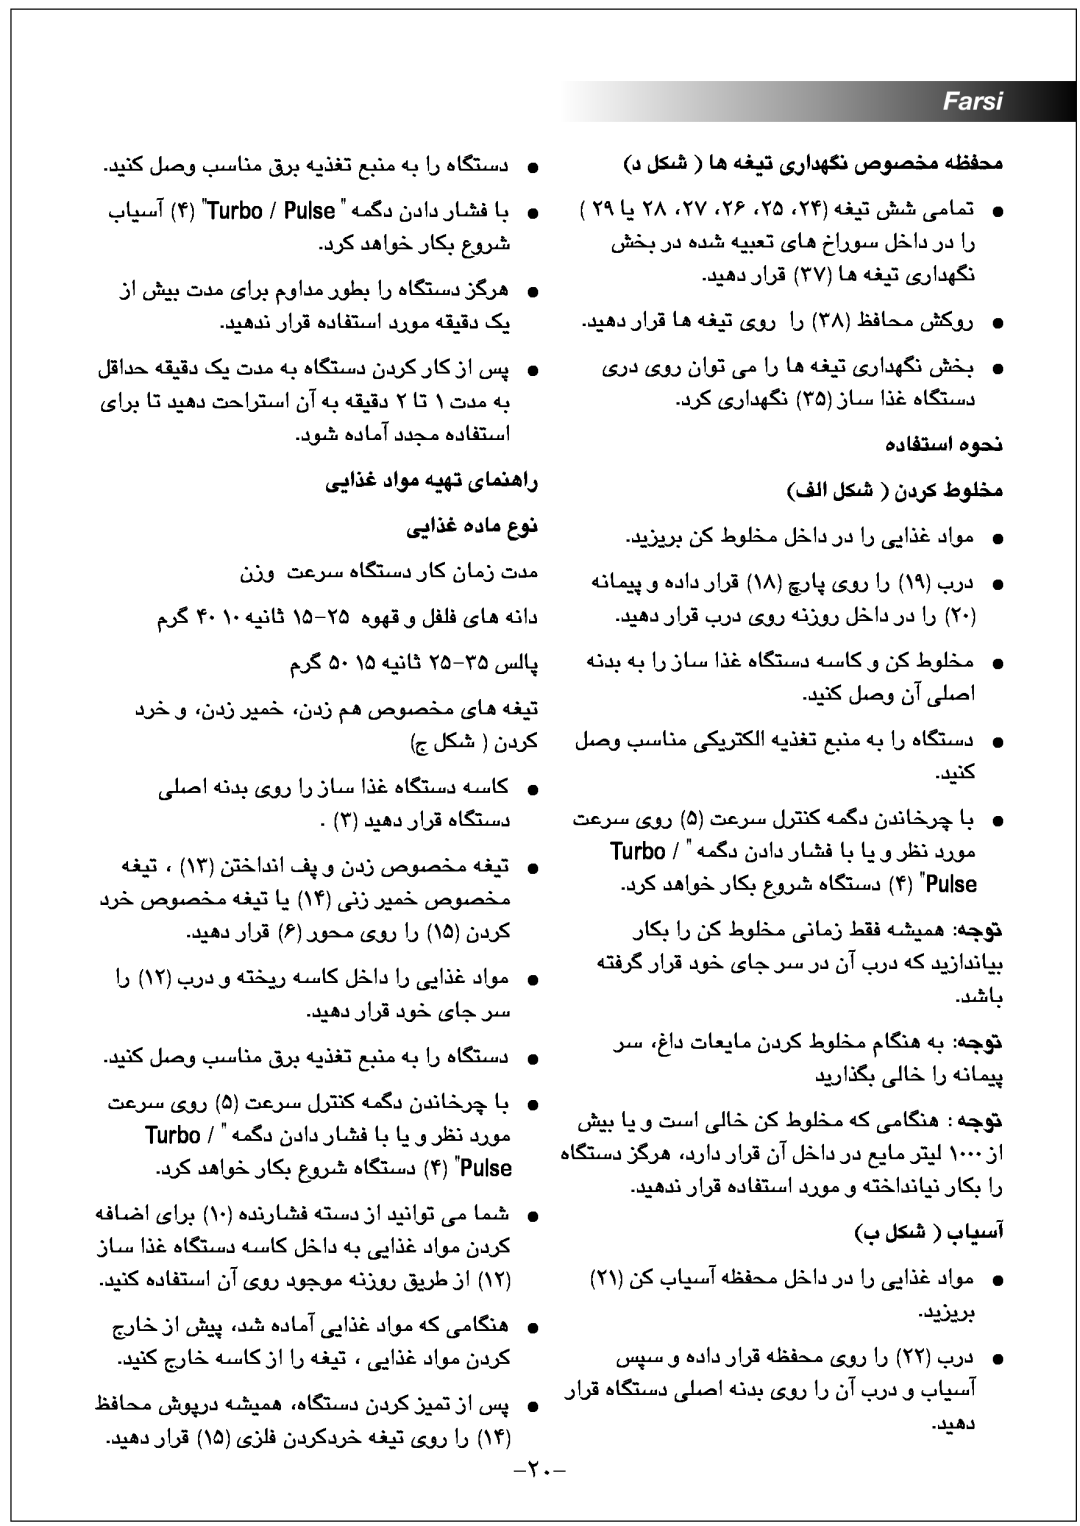 Black & Decker FX1000 manual ﯽﯾﺍﺬﻏ ﺩﺍﻮﻣ ﻪﯿﻬﺗ ﯼﺎﻤﻨﻫﺍﺭ ﯽﯾﺍﺬﻏ ﻩﺩﺎﻣ ﻉﻮﻧ, Farsi, ﺩ ﻞﮑﺷ ﺎﻫ ﻪﻐﯿﺗ ﯼﺭﺍﺪﻬﮕﻧ ﺹﻮﺼﺨﻣ ﻪﻈﻔﺤﻣ, ﺏ ﻞﮑﺷ ﺏﺎﯿﺳﺁ 